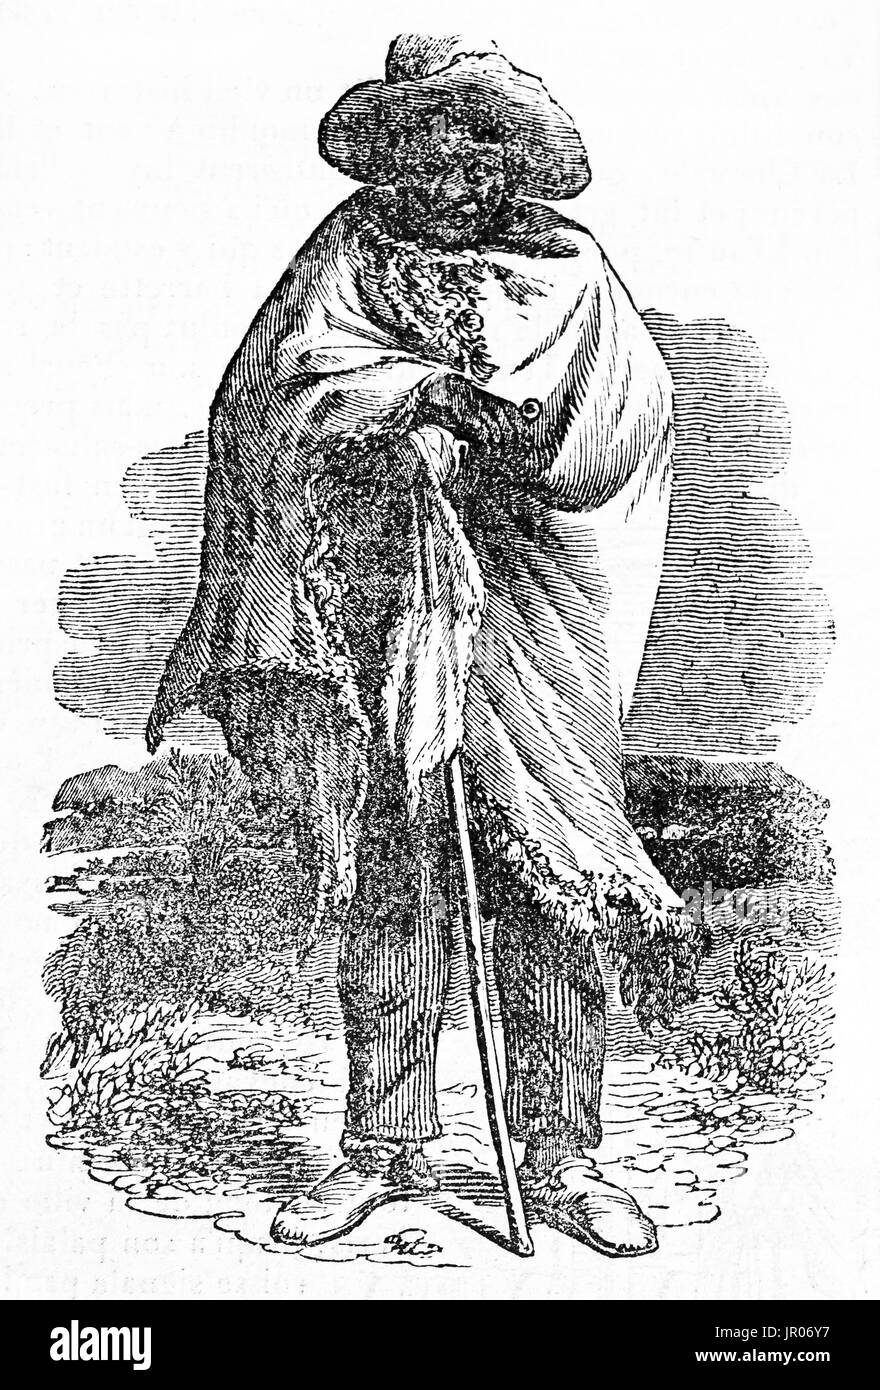 Alten gravierte Portrait eines Mannes Khoikhoi (Hottentotten). Von unbekannter Autor veröffentlicht am Magasin Pittoresque, Paris, 1833. Stockfoto